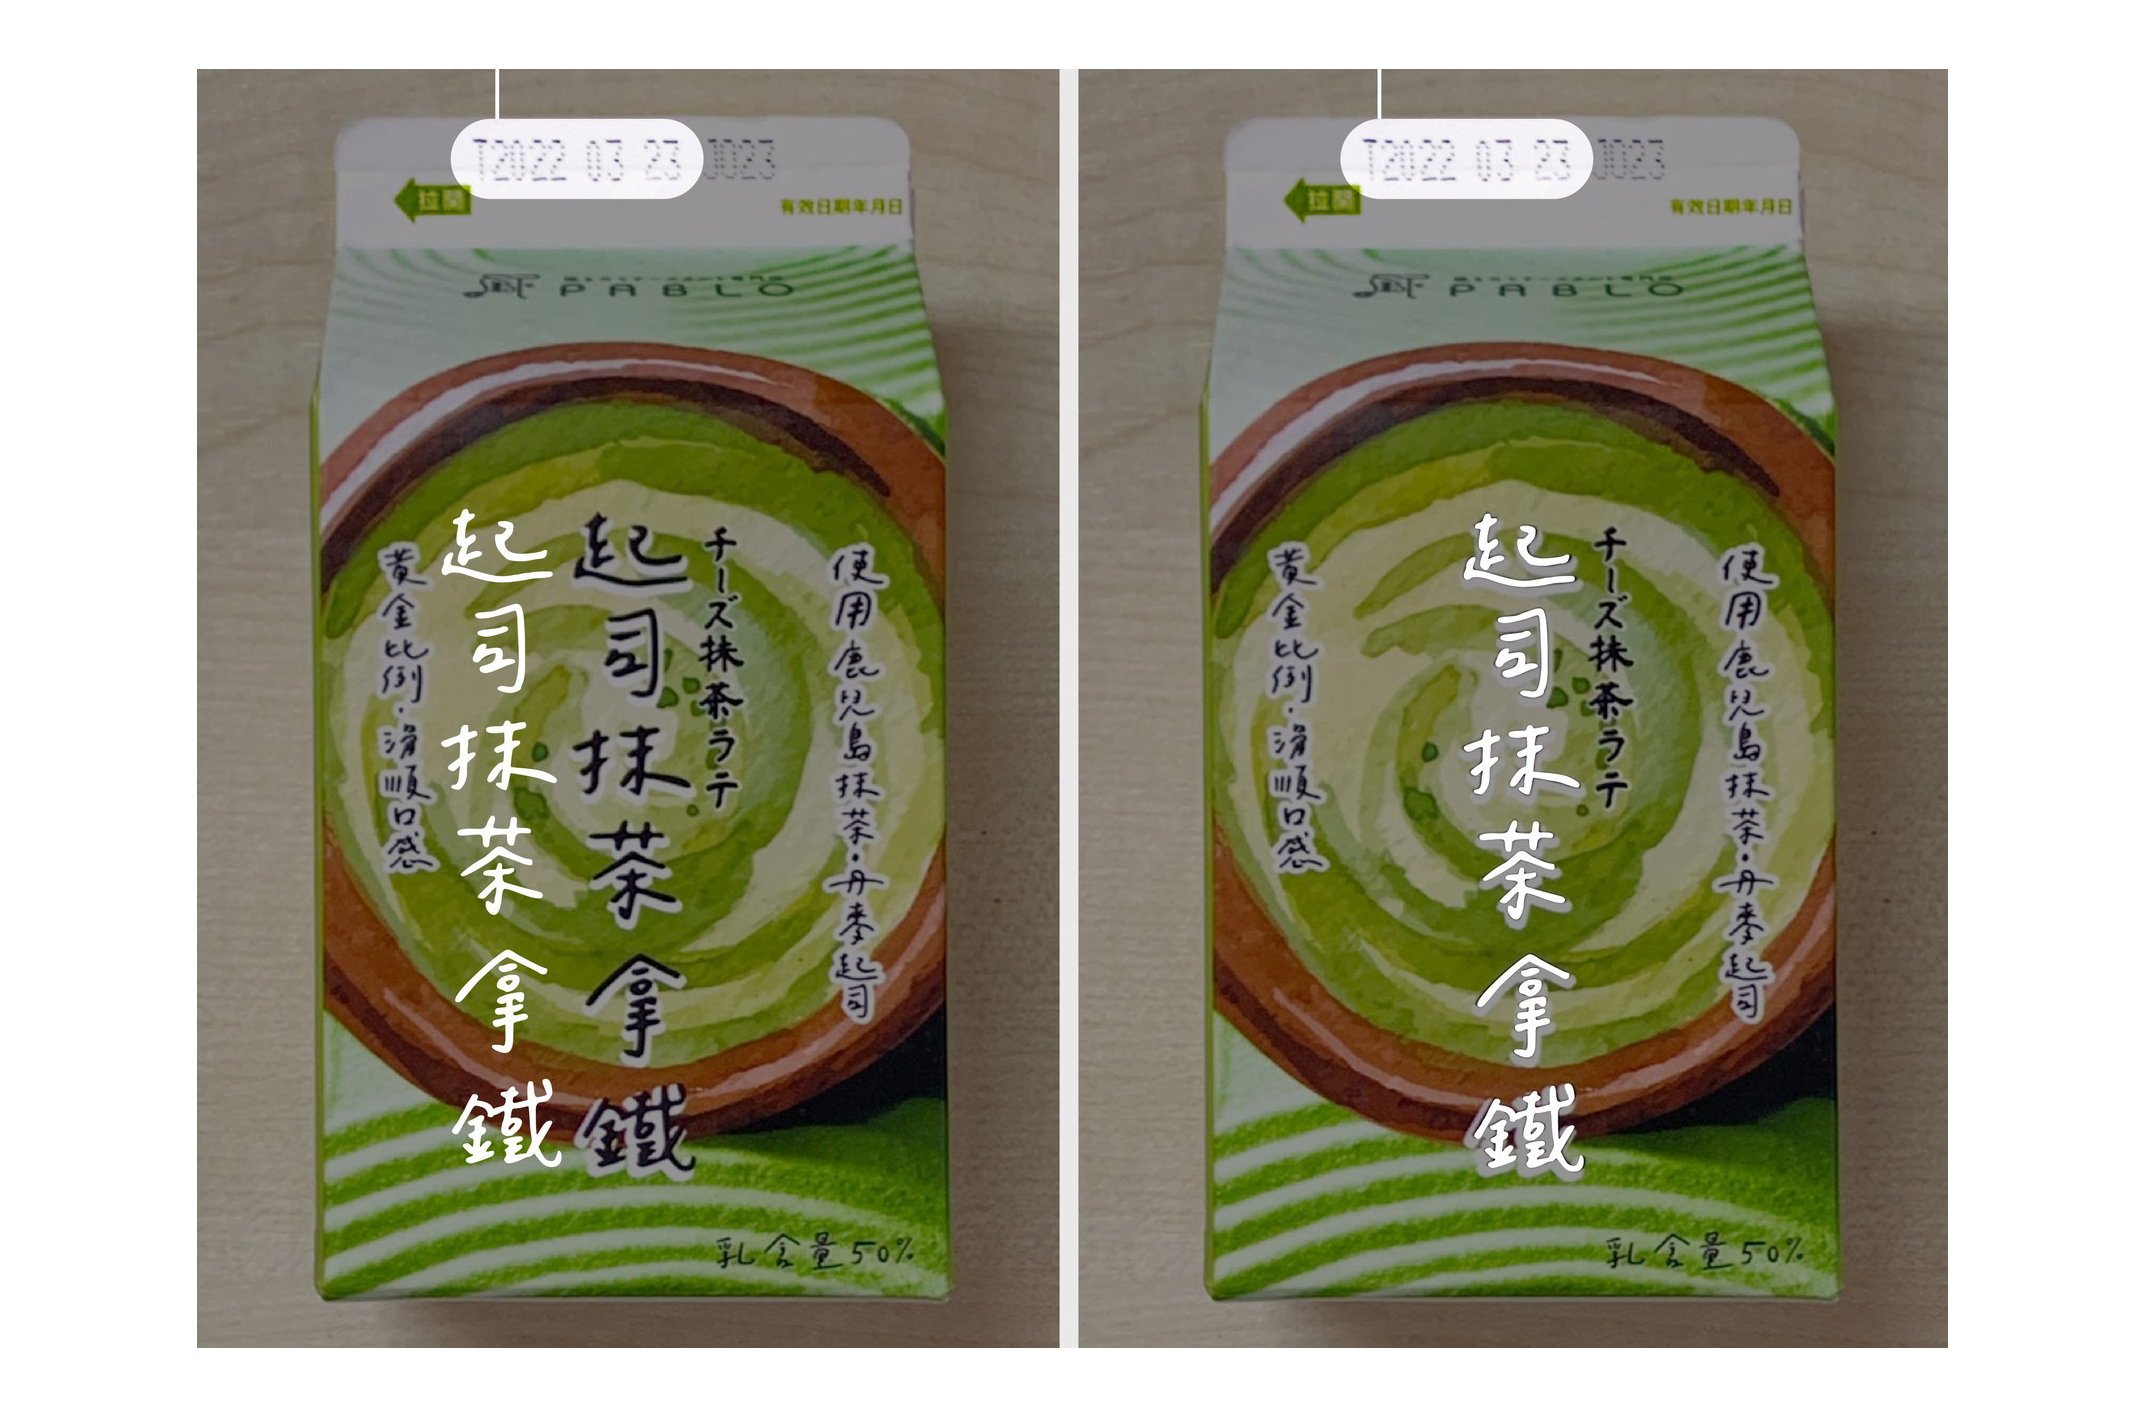 PABLO 起司抹茶拿鐵包裝使用未經授權的「口力口體」字型